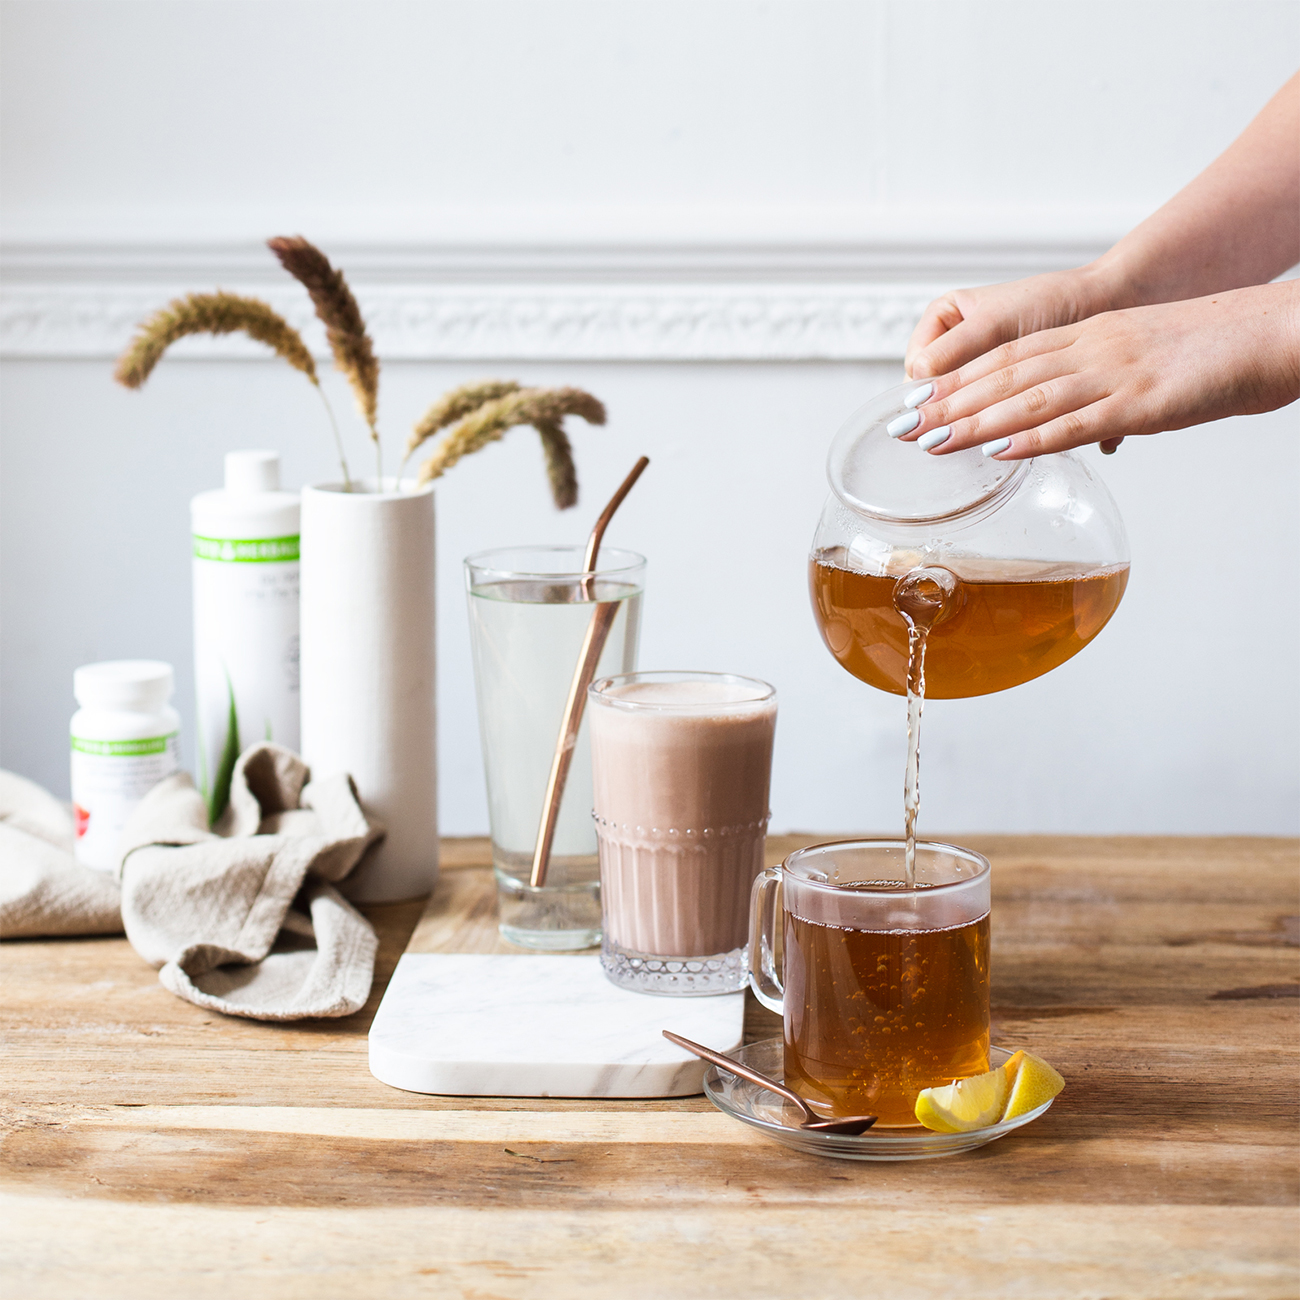 herbalife nutrition gesundes frühstück und eine hand die ein teegetränk eingießt